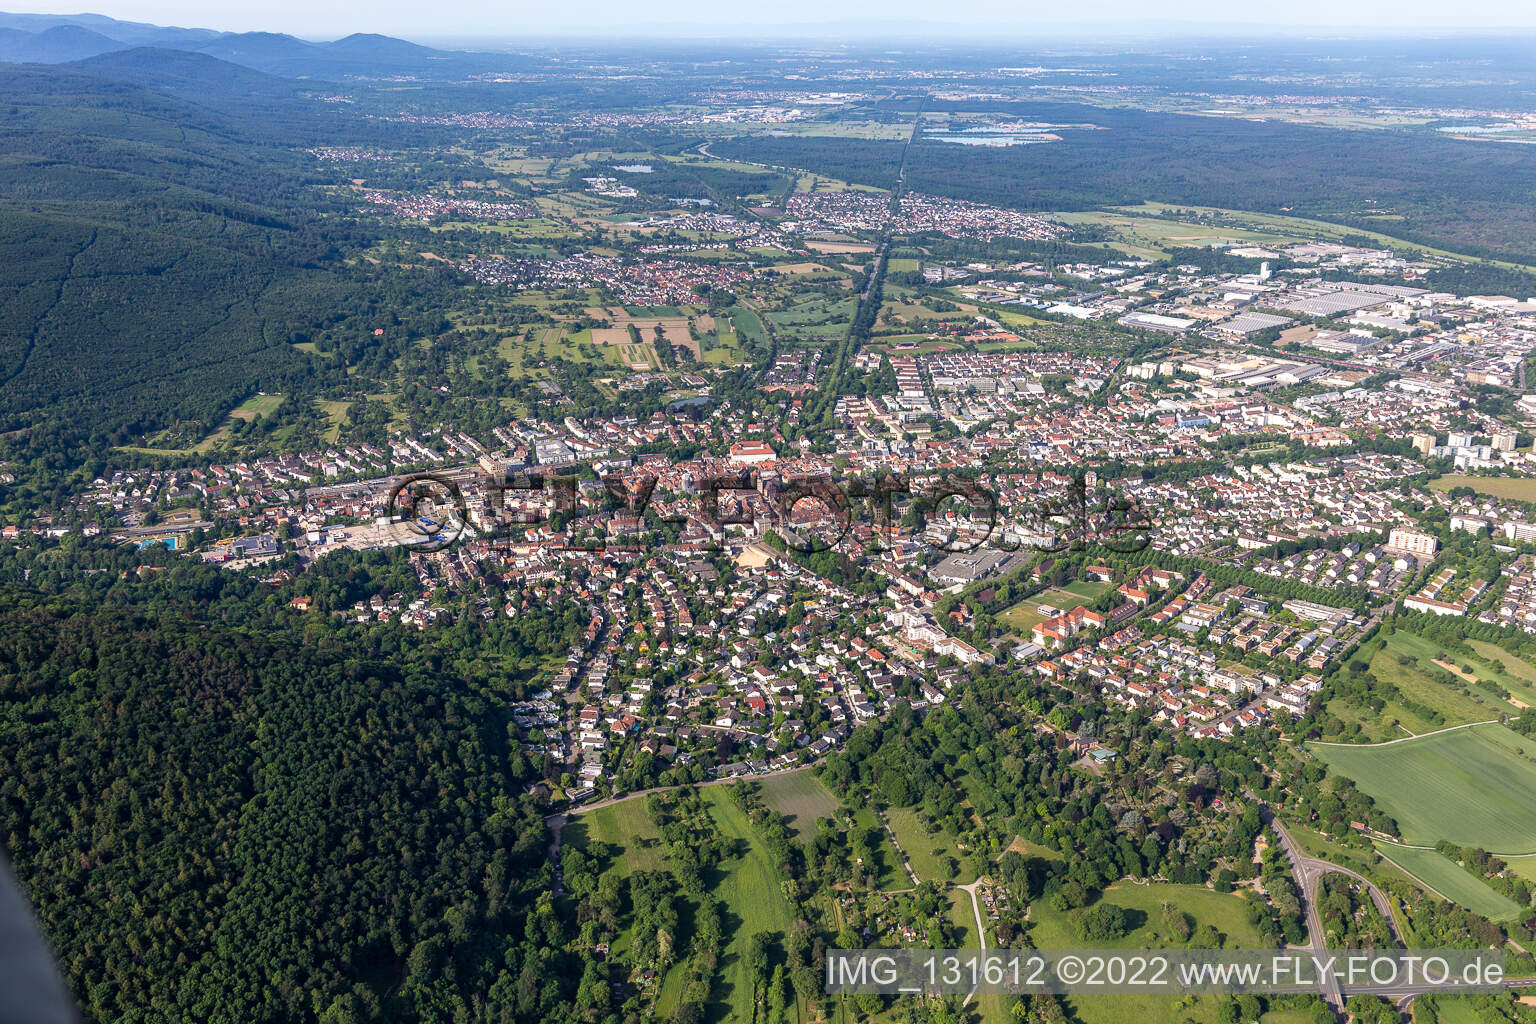 Luftbild von Ettlingen im Bundesland Baden-Württemberg, Deutschland